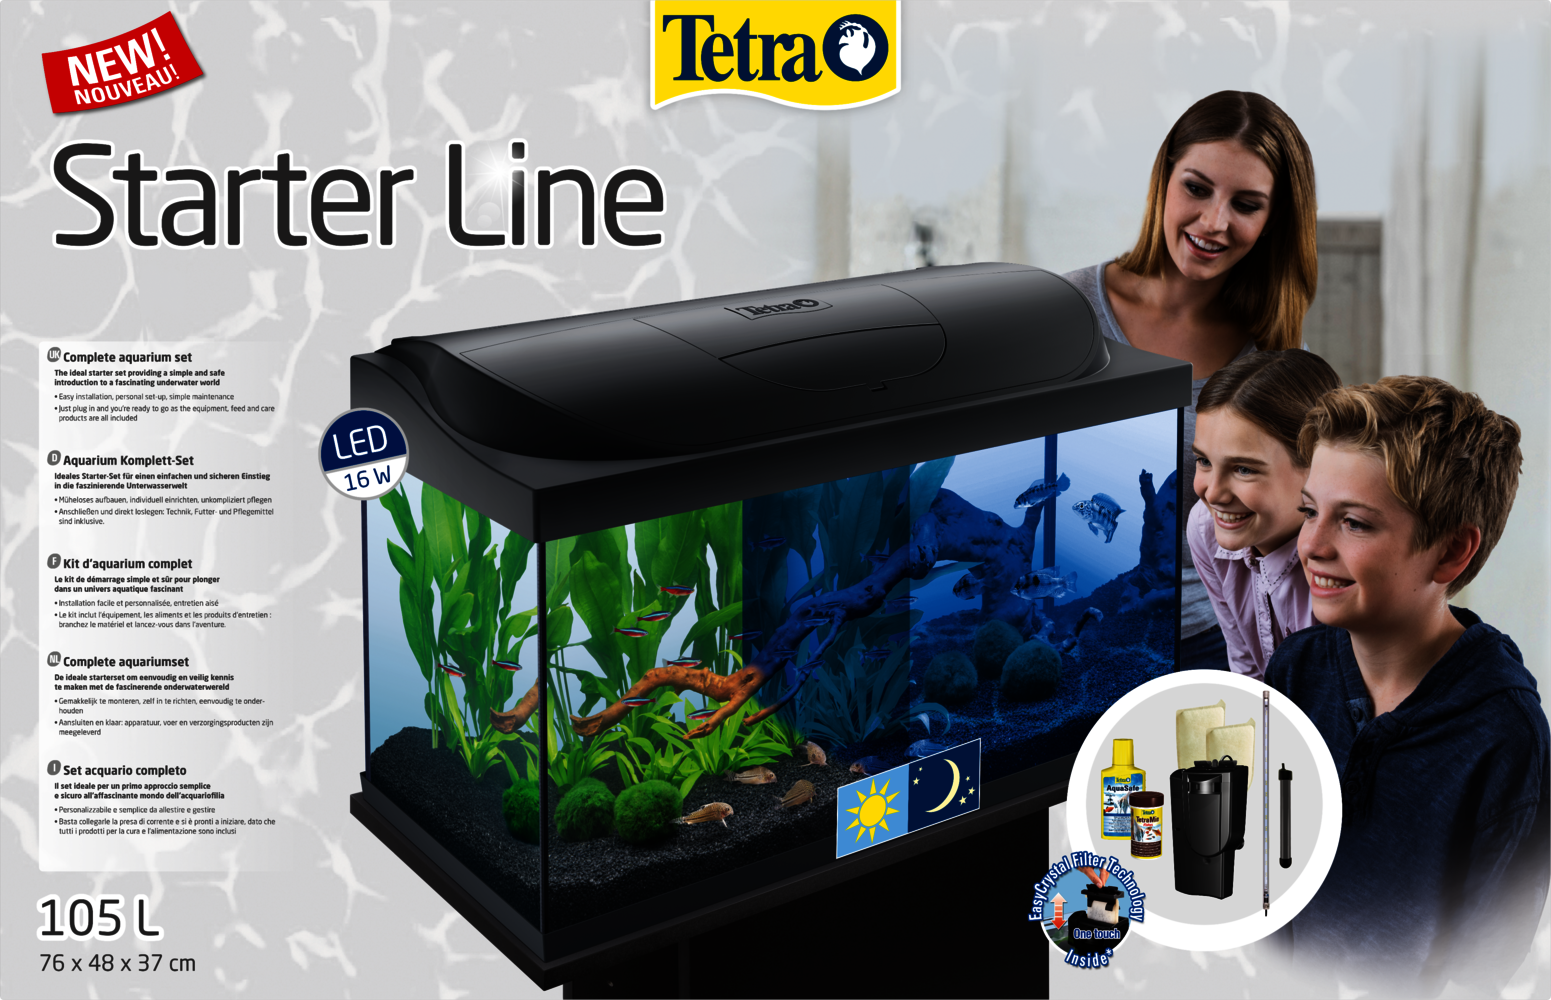 Tetra Starter Line LED 105L Aquarium: Tetra